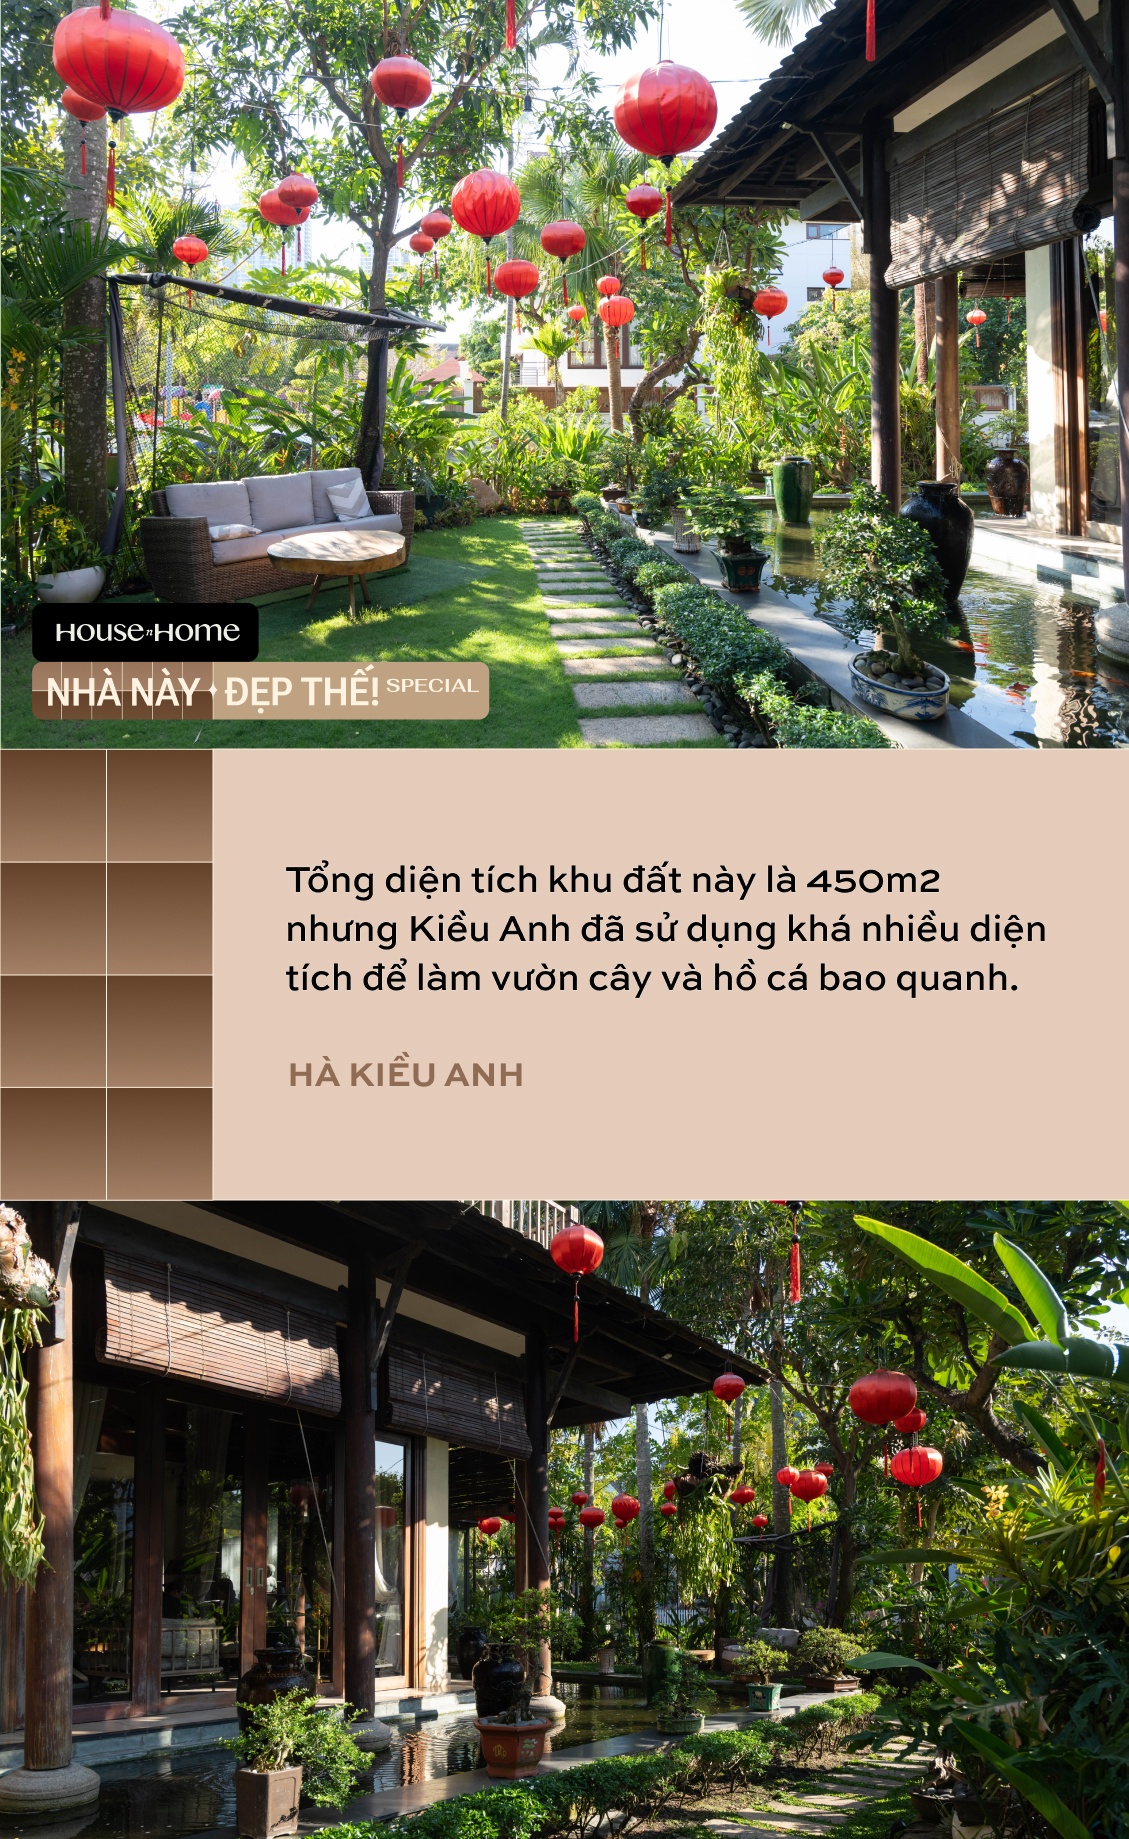 Biệt thự nhà vườn gần 20 năm tuổi của HH Hà Kiều Anh: Phong vị Á Đông cổ kính, khẳng định không bao giờ bán